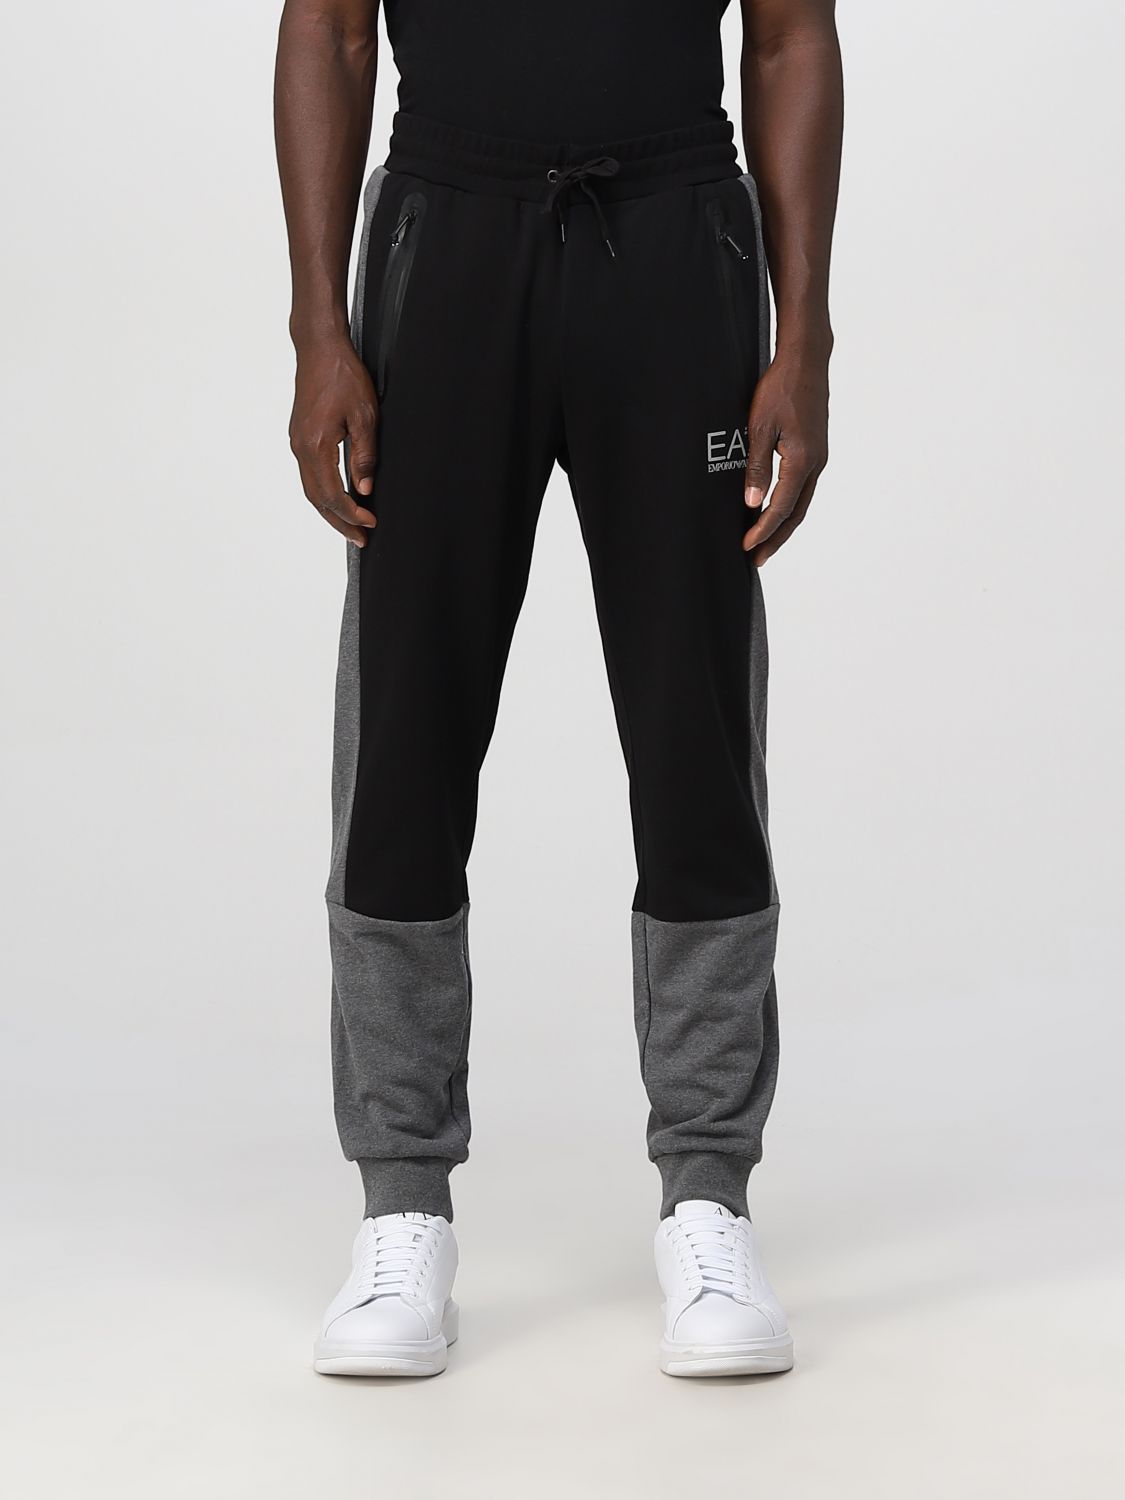 Ea7 Outlet: pants for man - Black | Ea7 pants 6LPP61PJEQZ online at ...